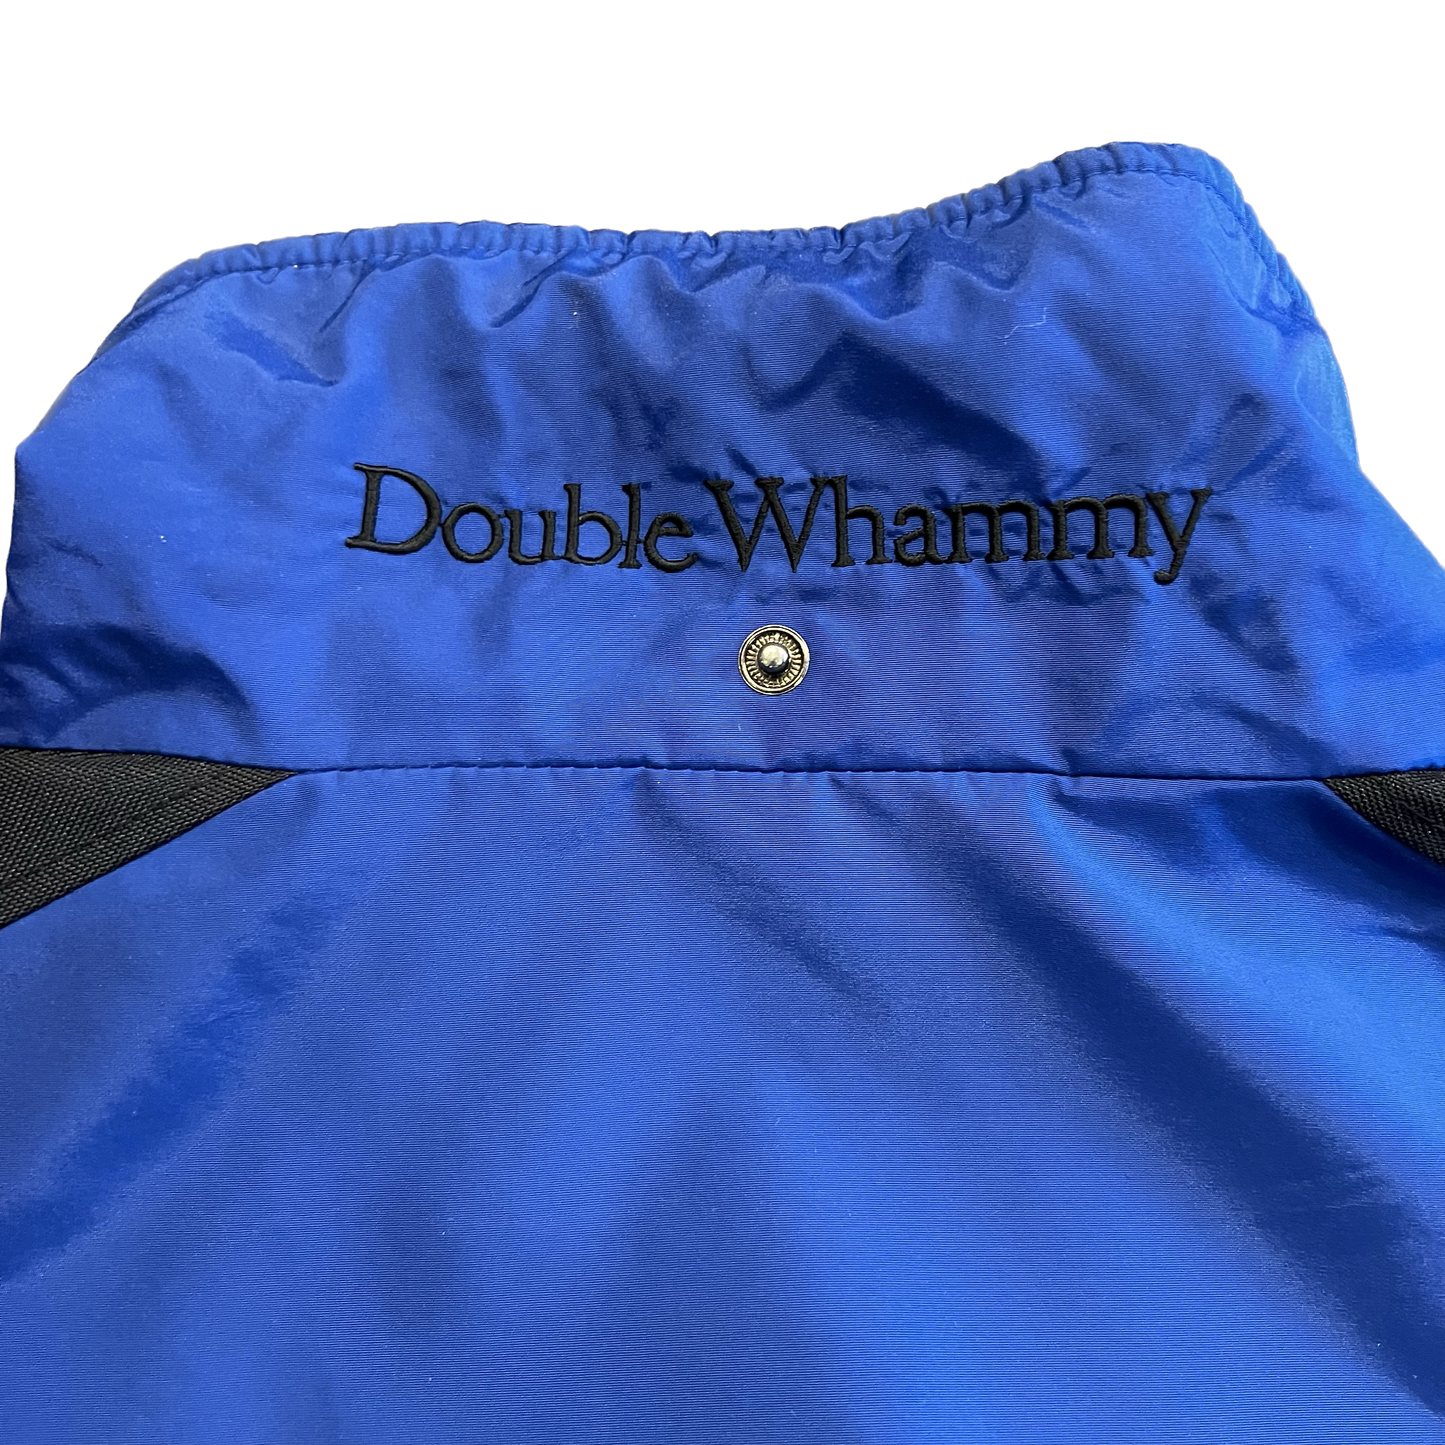 Vintage Columbia "Double Whammy" Jacket - 2X-Large - Blue / Black